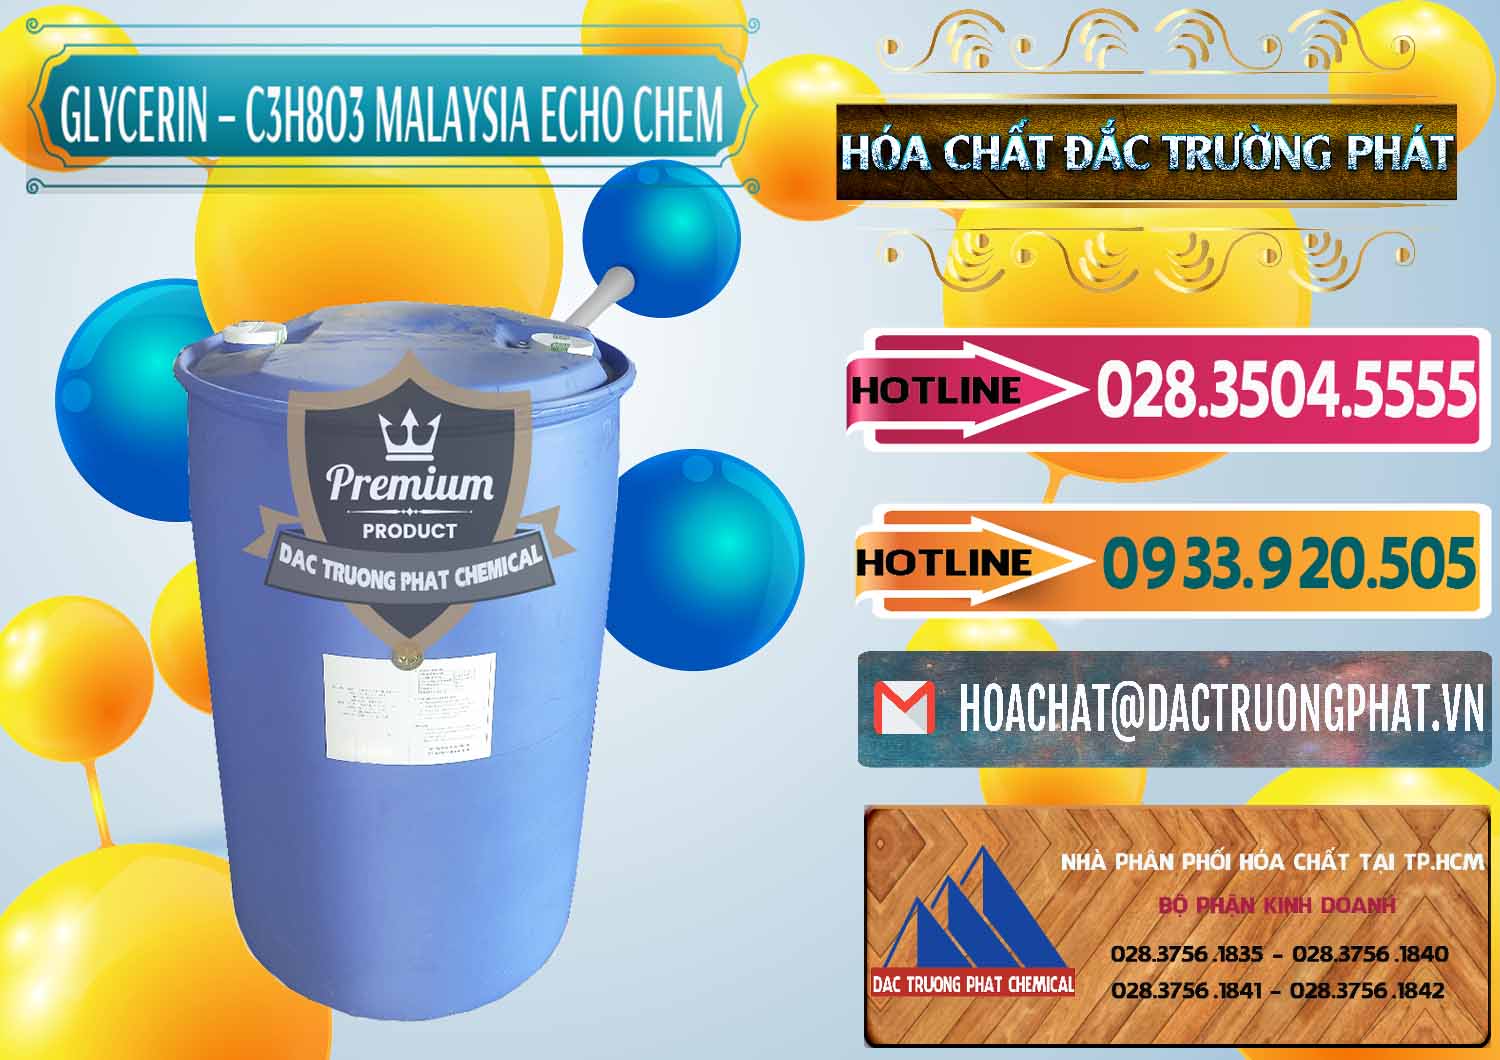 Nơi chuyên cung ứng - bán C3H8O3 - Glycerin 99.7% Echo Chem Malaysia - 0273 - Đơn vị phân phối & cung cấp hóa chất tại TP.HCM - dactruongphat.vn